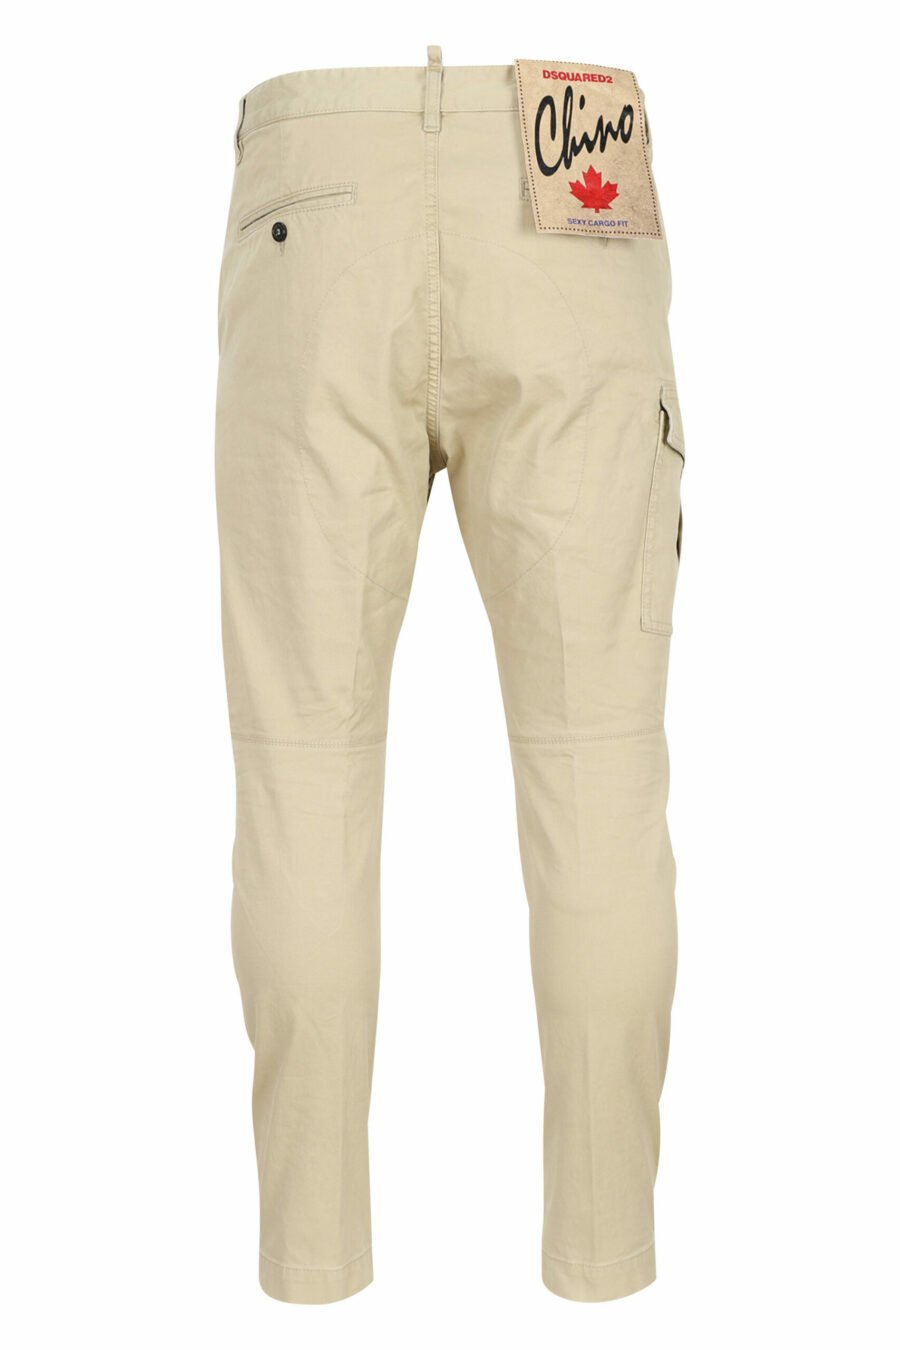 Dsquared2 - Pantalón sexy cargo pant beige con bolsillos